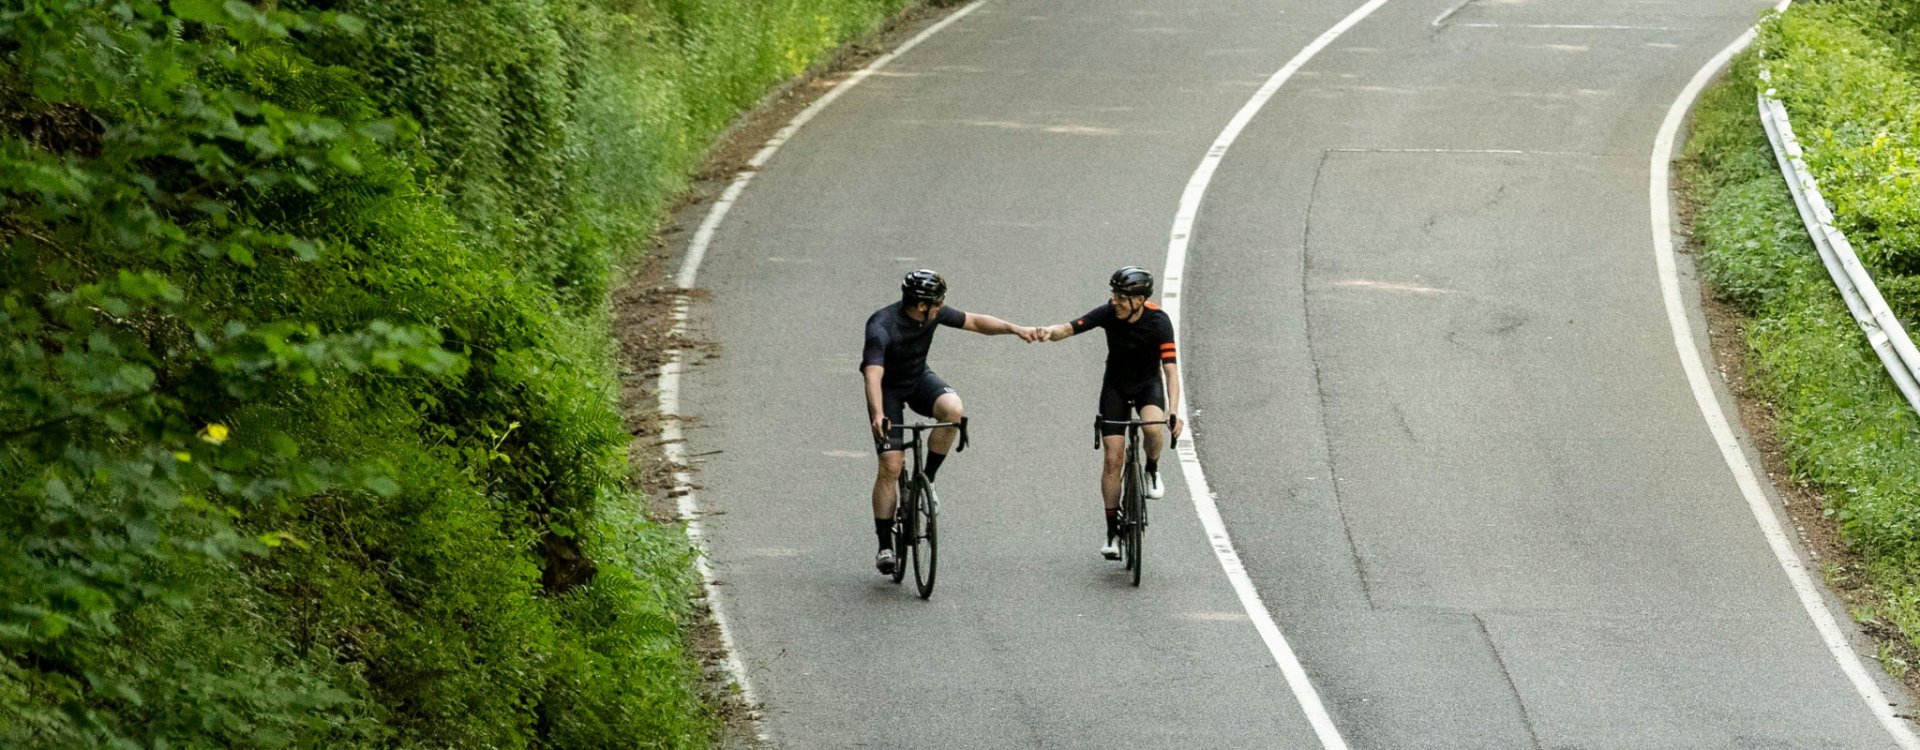 Zwei Rennradfahrer auf Specialized Tarmac SL7 Bikes geben sich nach bewältigter Steigung eine anerkennende Faust.